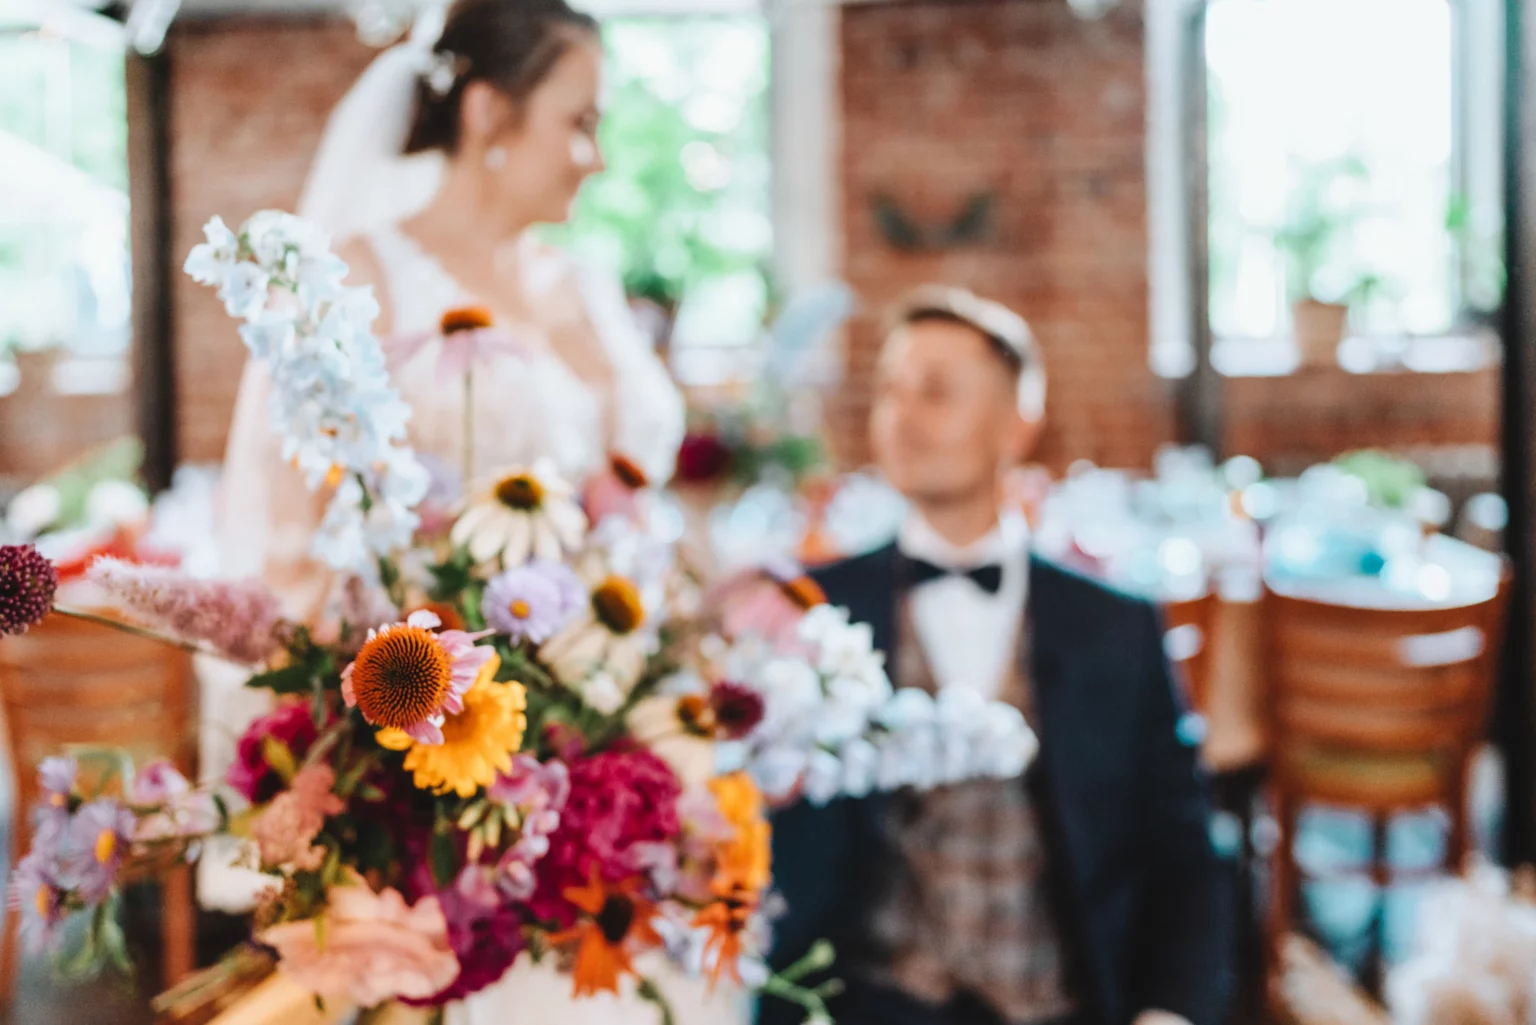 dekoracje wesele, wesele z naturą, kwiaty ślub, kwiaty wesele, dekoracje poznań, organizacja wesela, ślub krok po kroku